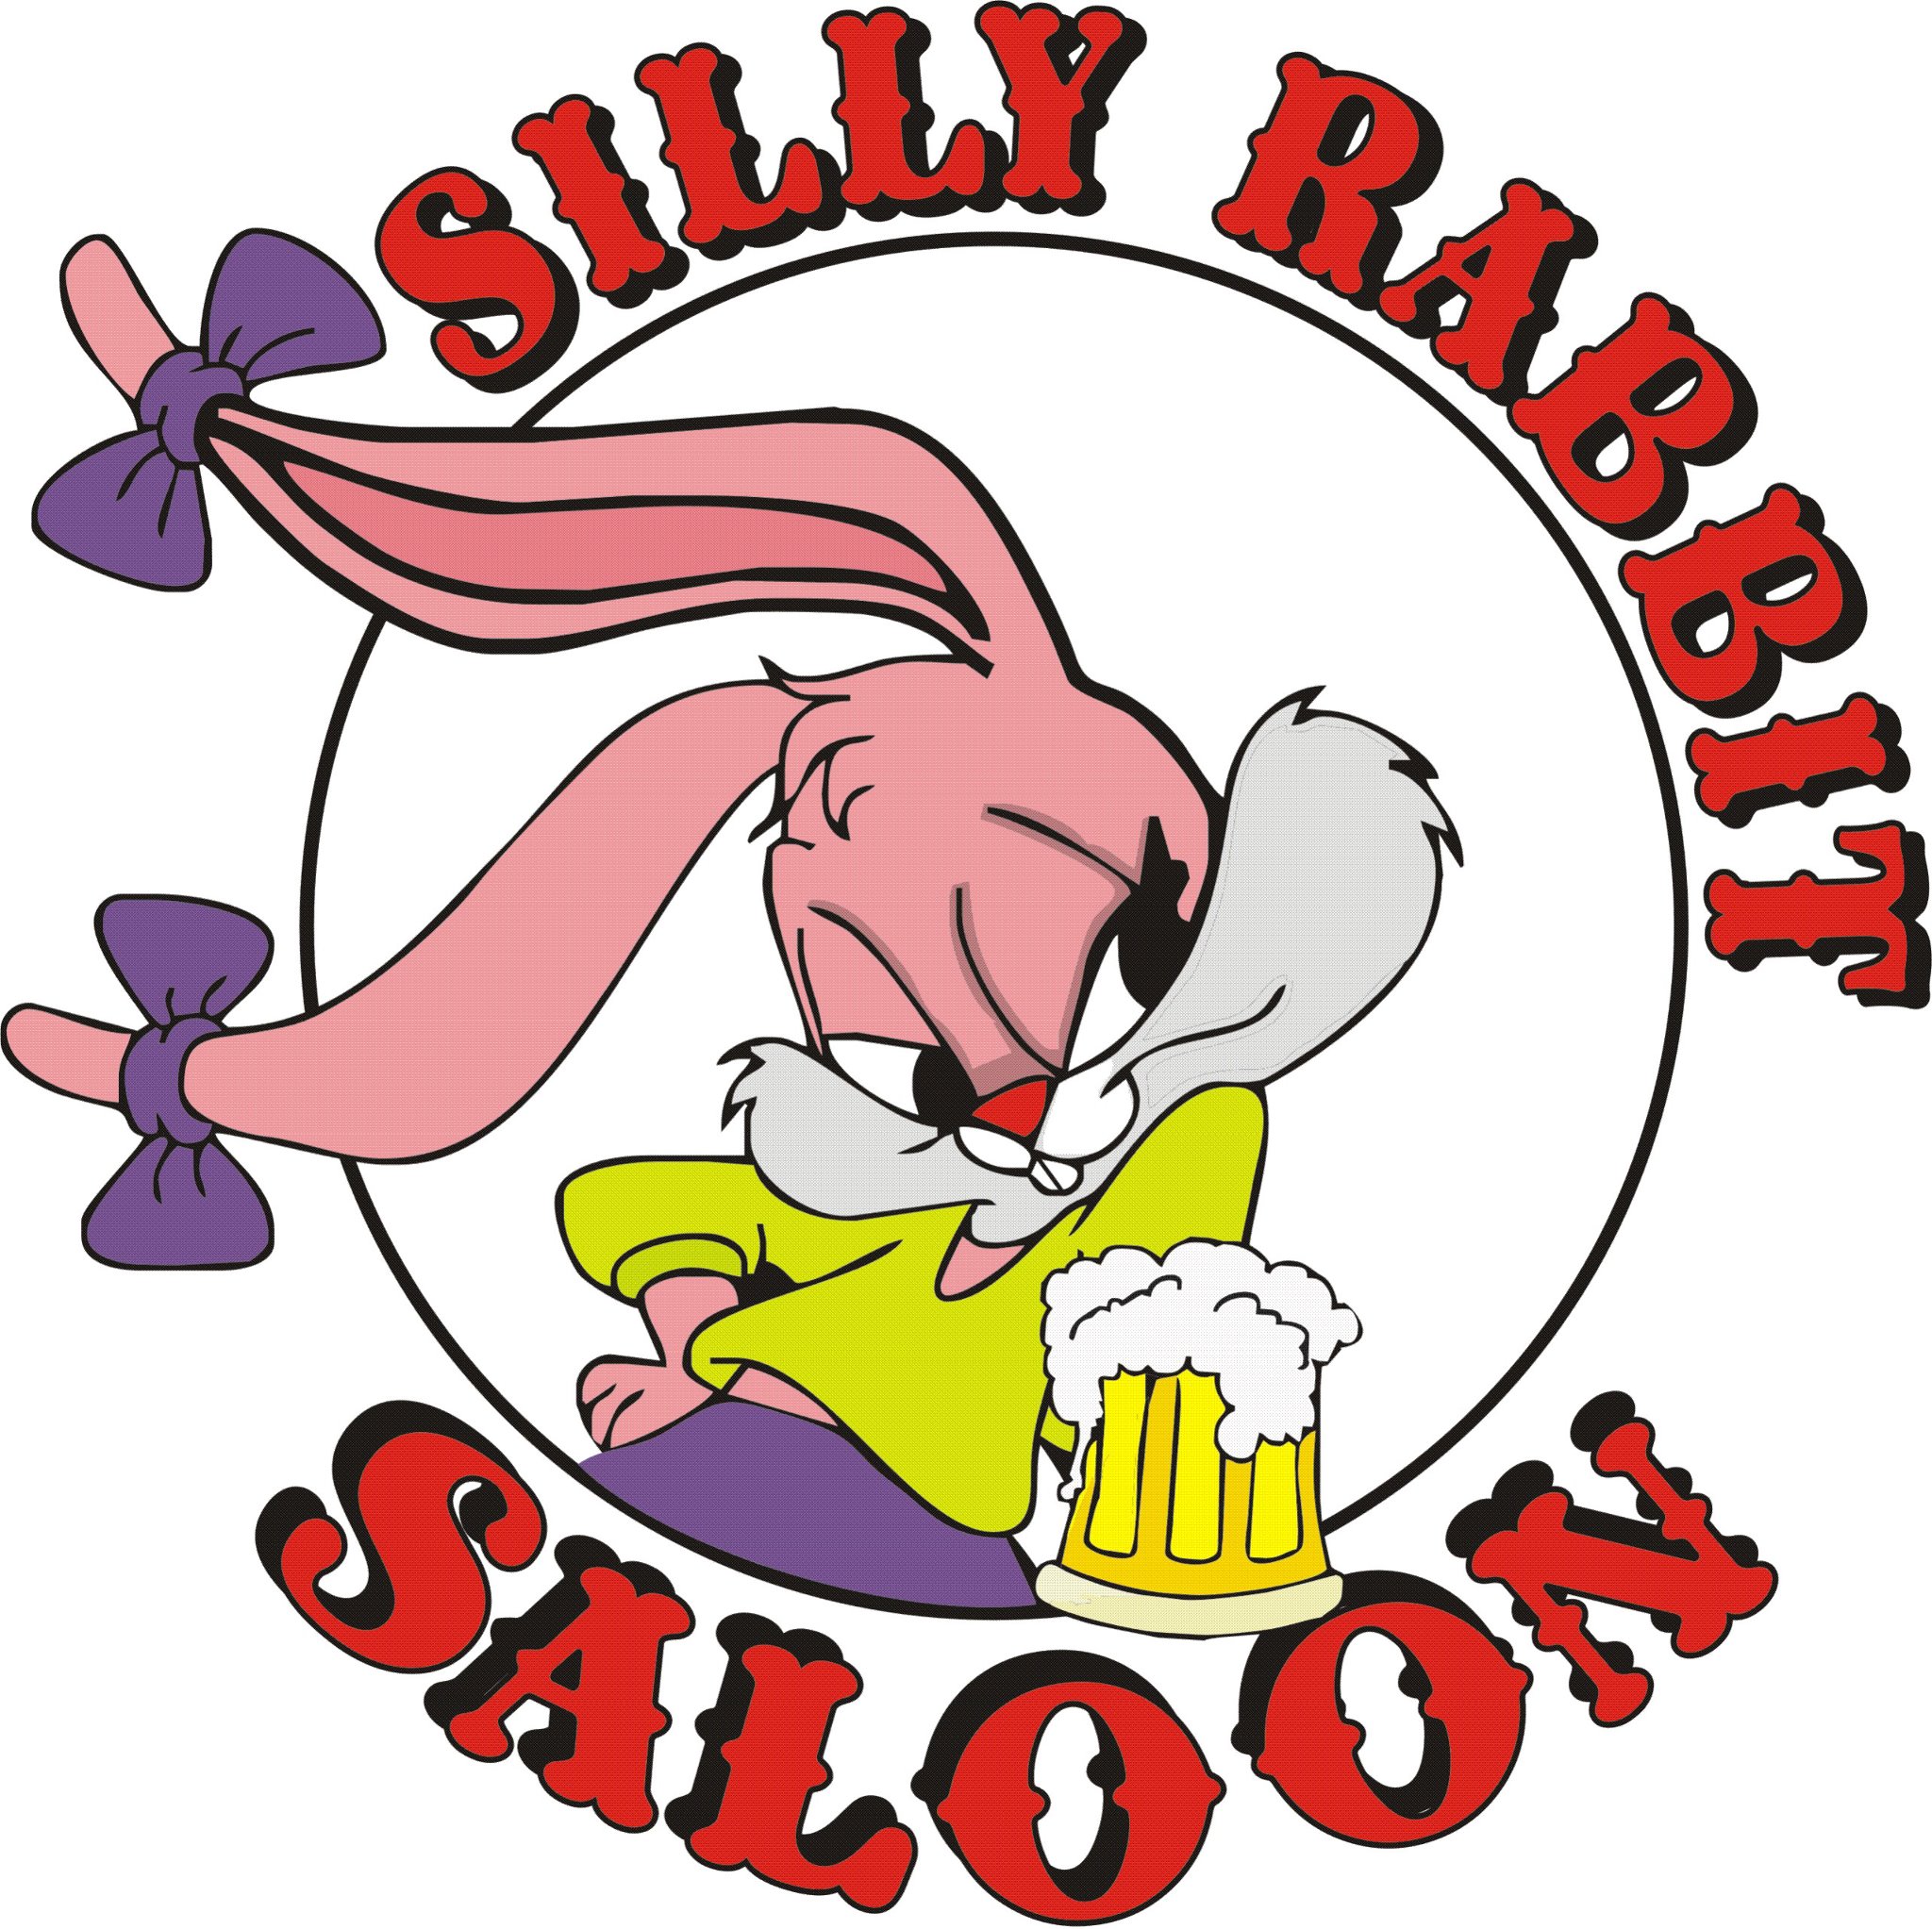 (Facebook/Silly Rabbit Saloon)